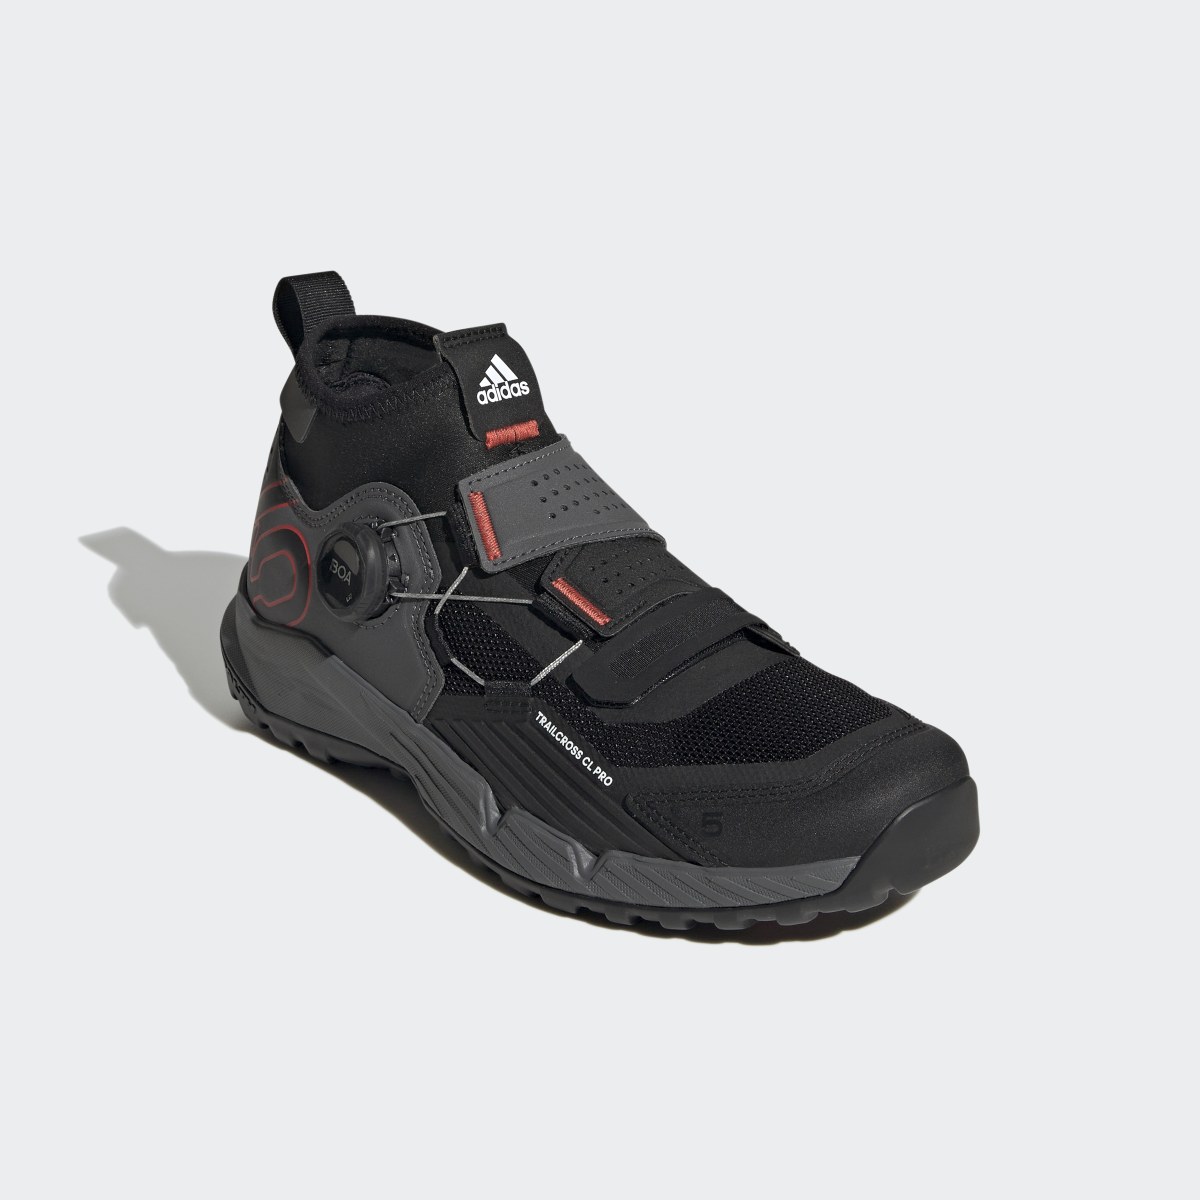 Adidas Five Ten Trailcross Pro Clip-In Mountain Biking Shoes. 5